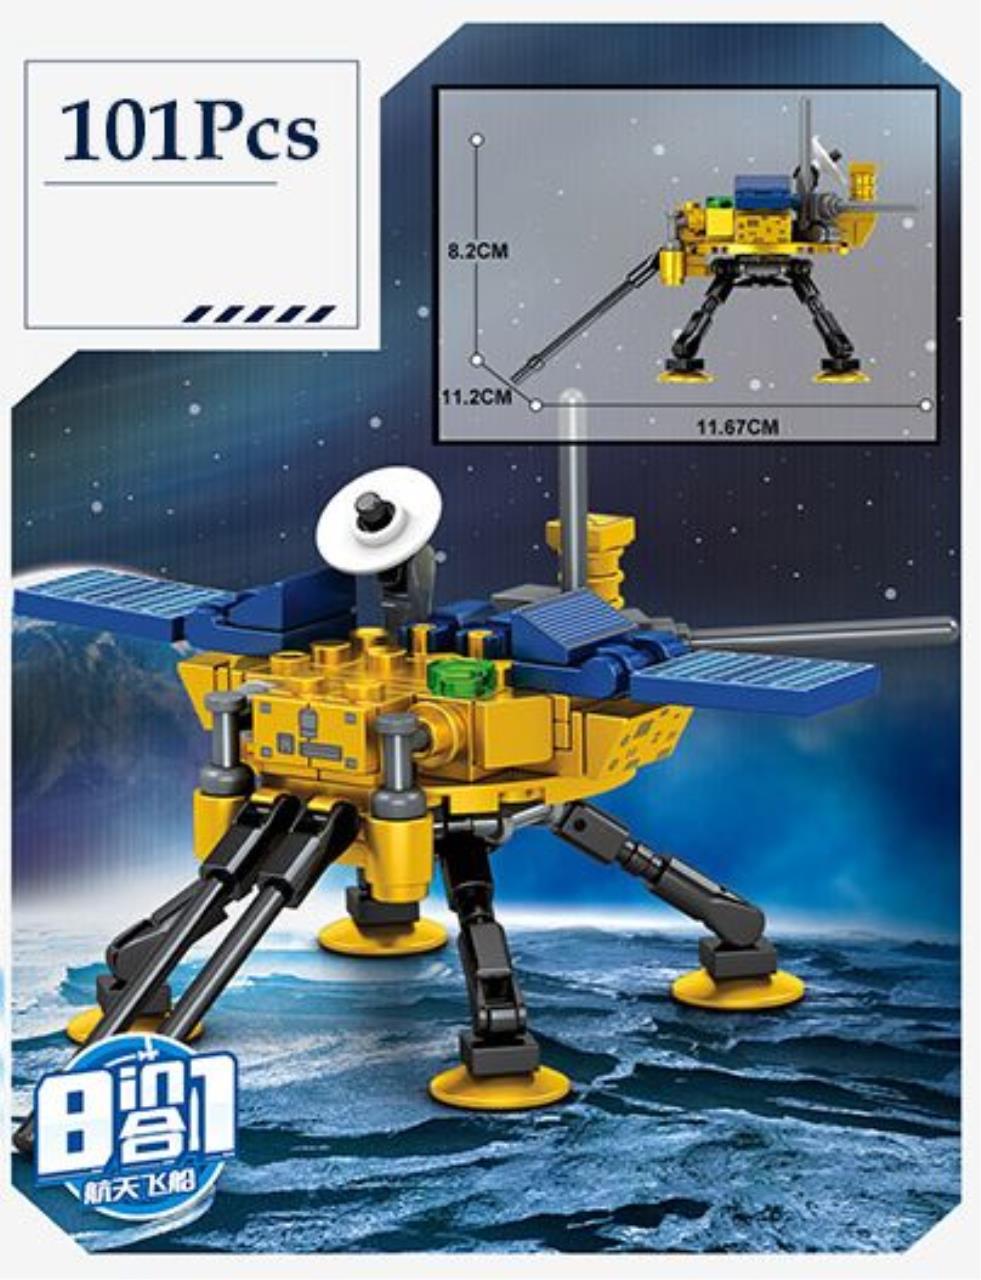 Игровой набор конструктор Sembo Космический корабль, 203314, 101 шт конструктор космический транспорт